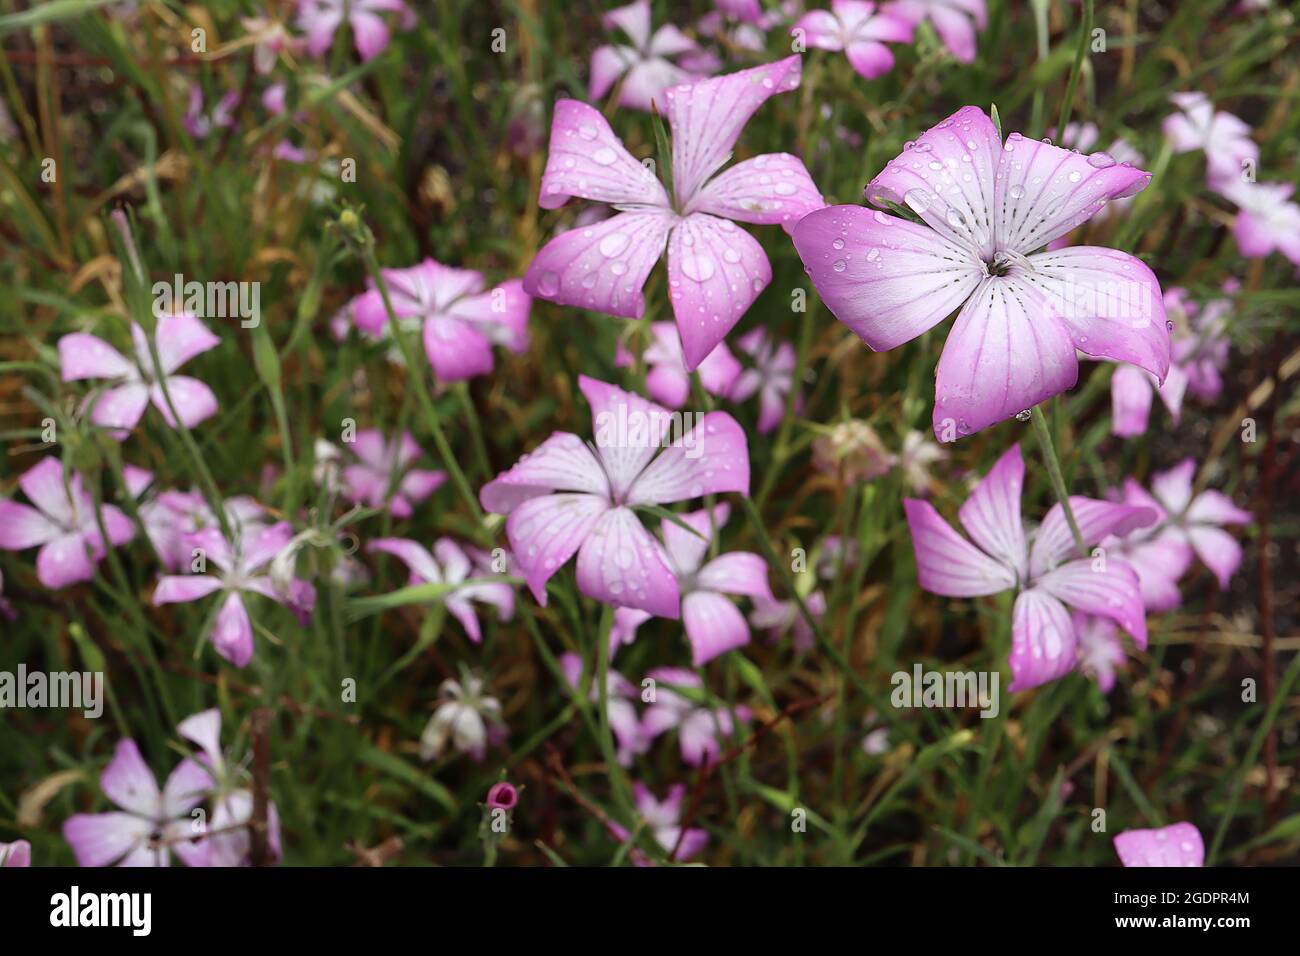 Agrostemma brachyloba Cornacle stretto – grandi fiori rosa profondi a forma di salice con centro bianco e linee nere punteggiate, luglio, Inghilterra, Regno Unito Foto Stock